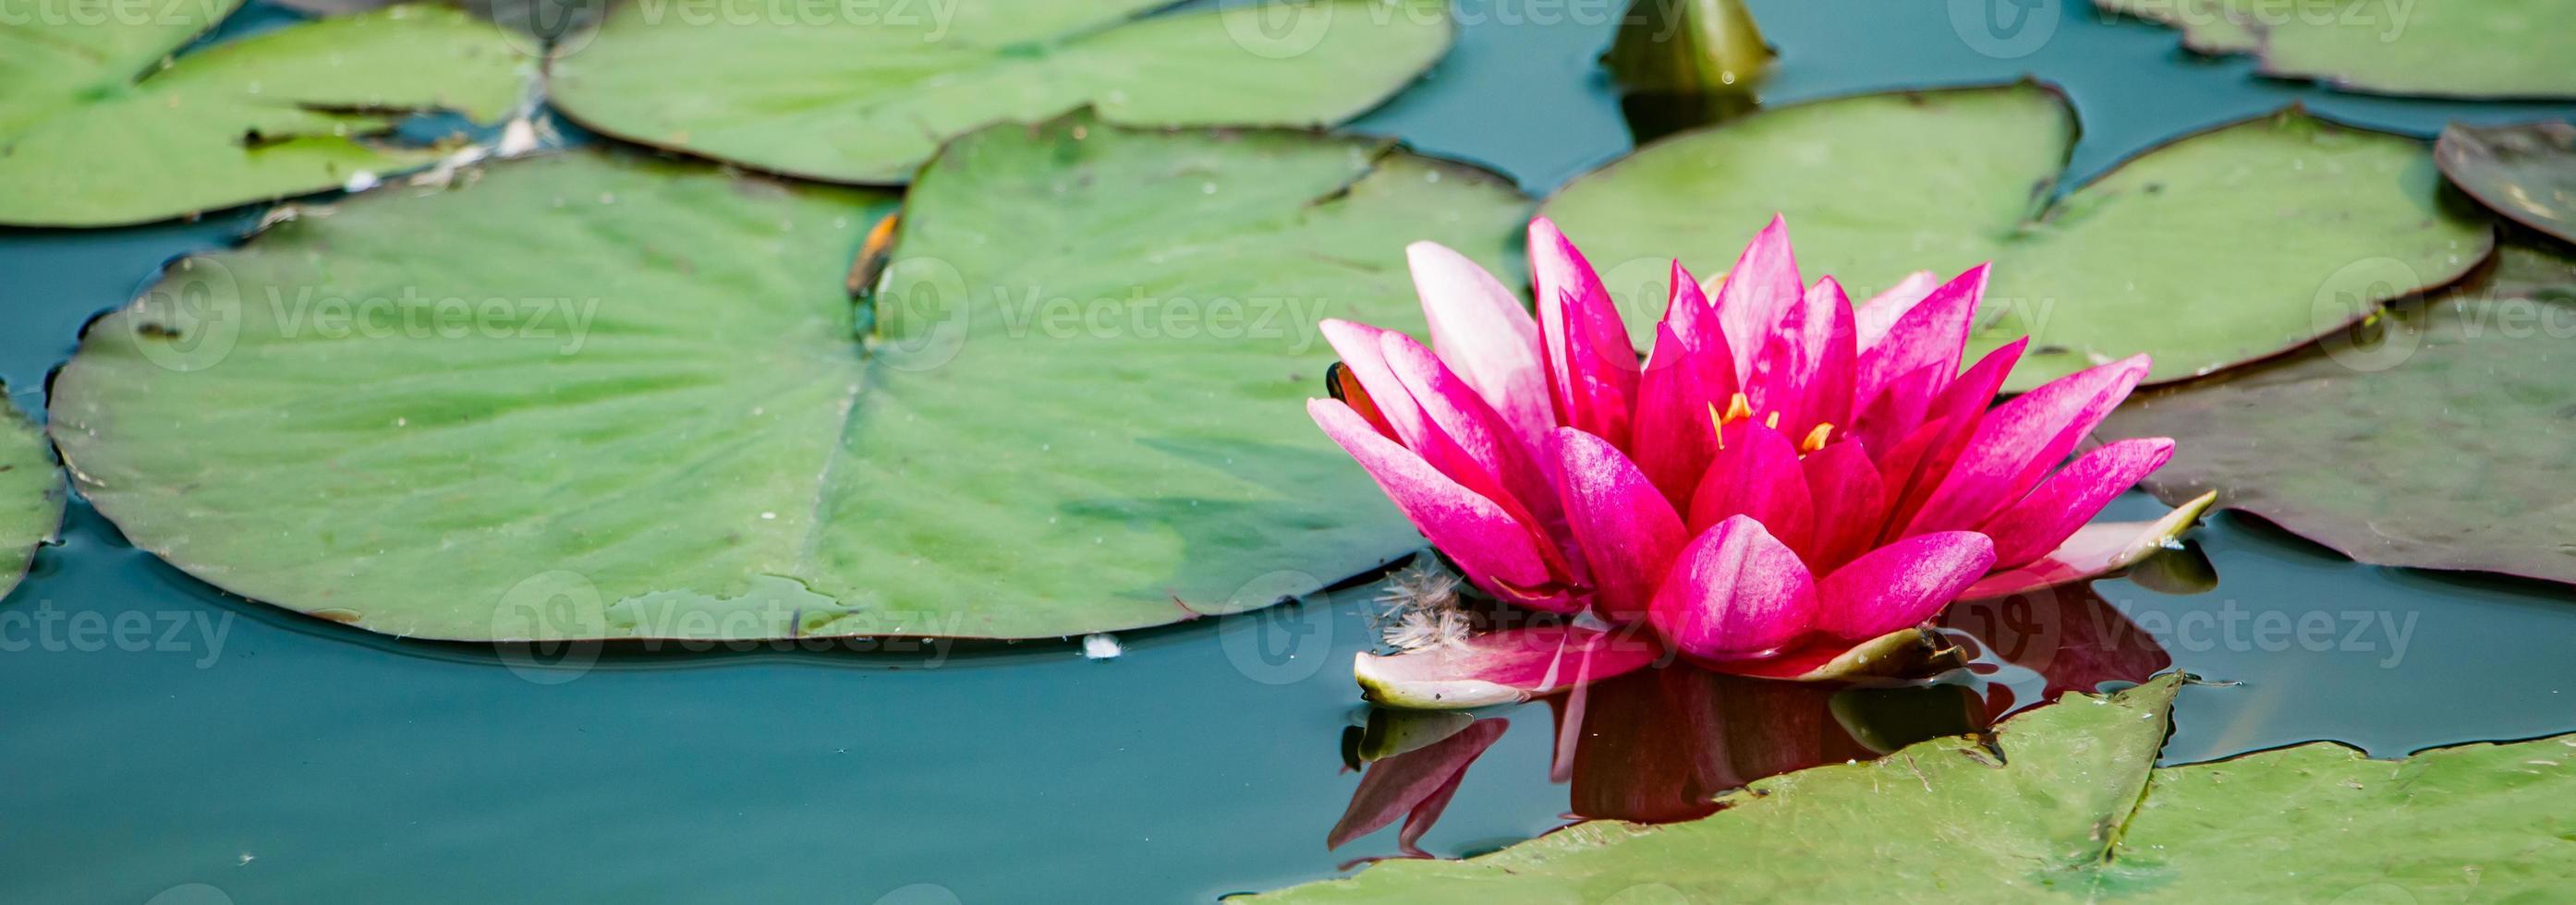 lotos rosados en agua clara. hermosos nenúfares en el estanque. flor asiática - un símbolo de relajación. foto